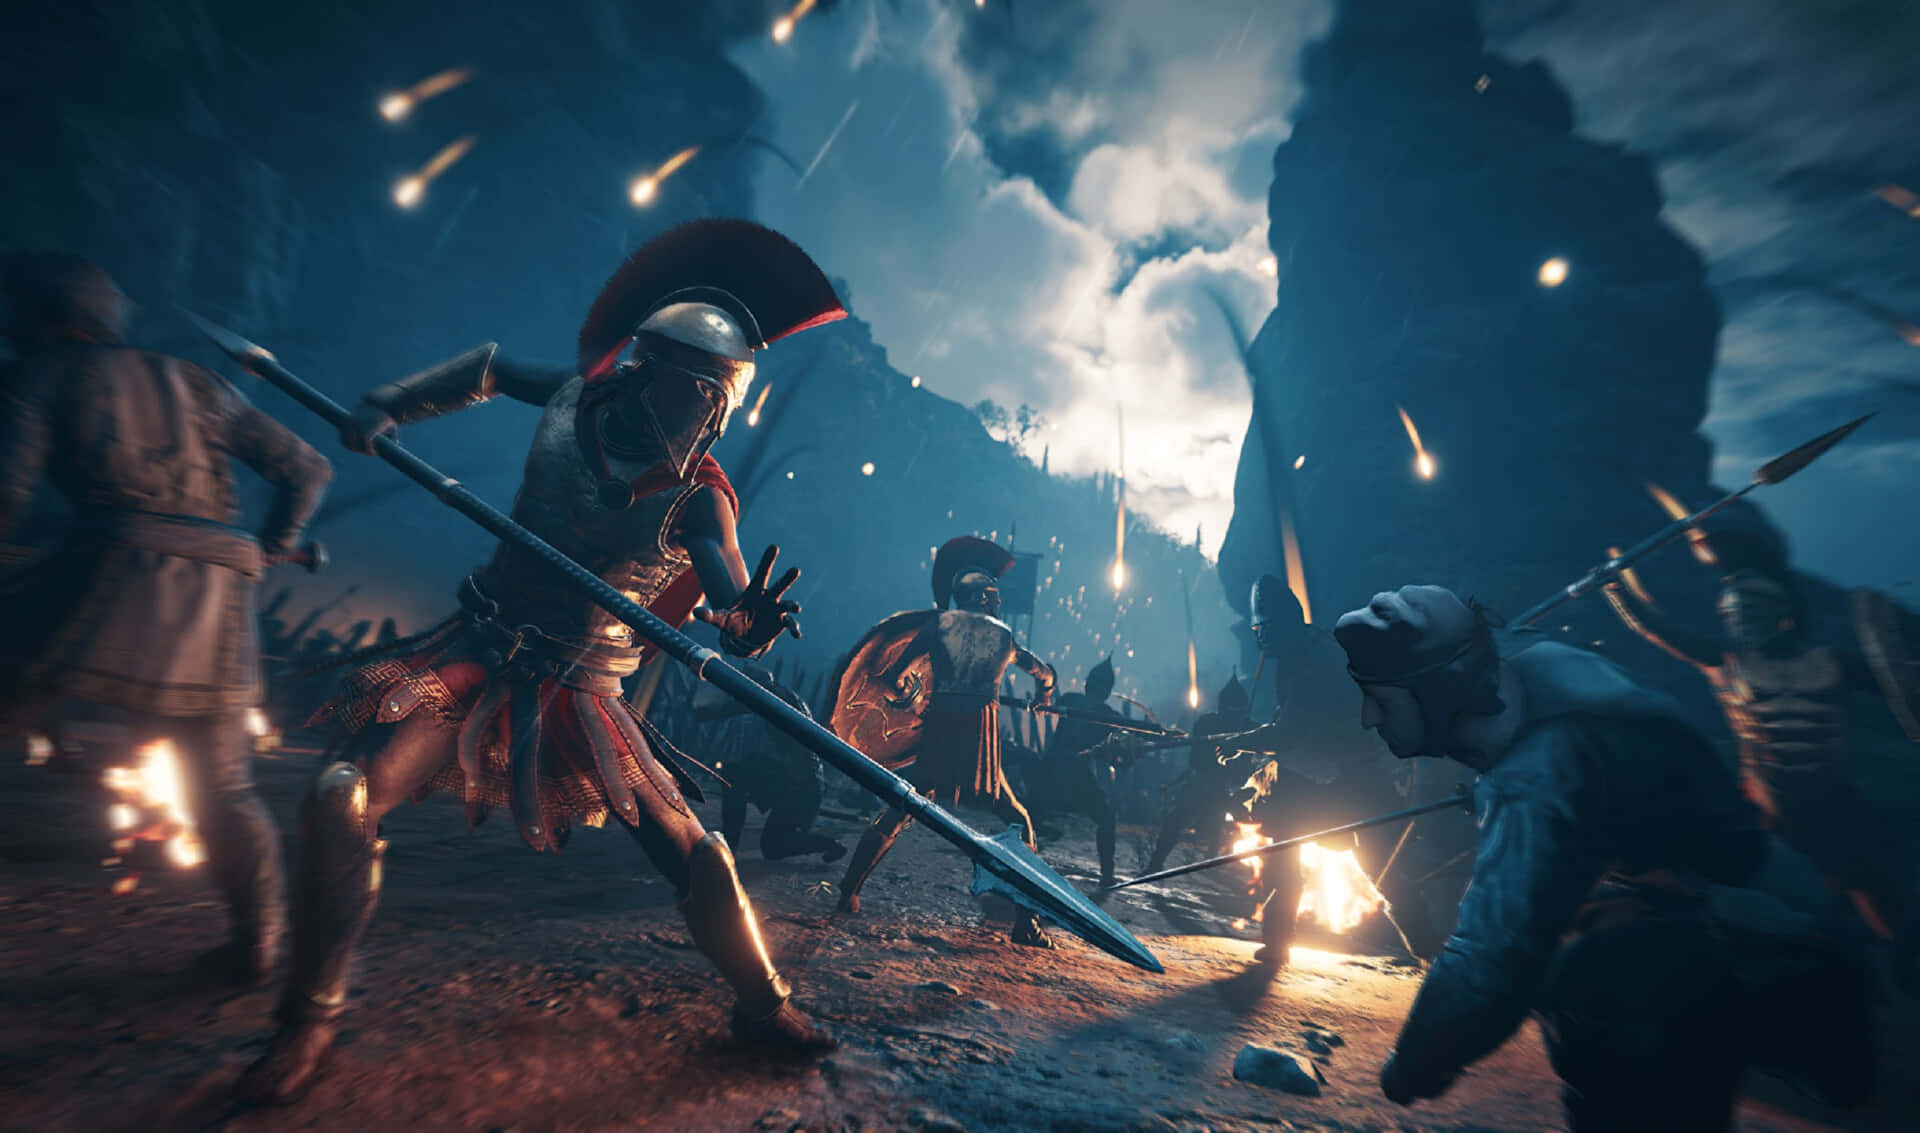 2440x1440bakgrundsbild Med Alexios I Krig Från Assassin's Creed Odyssey.